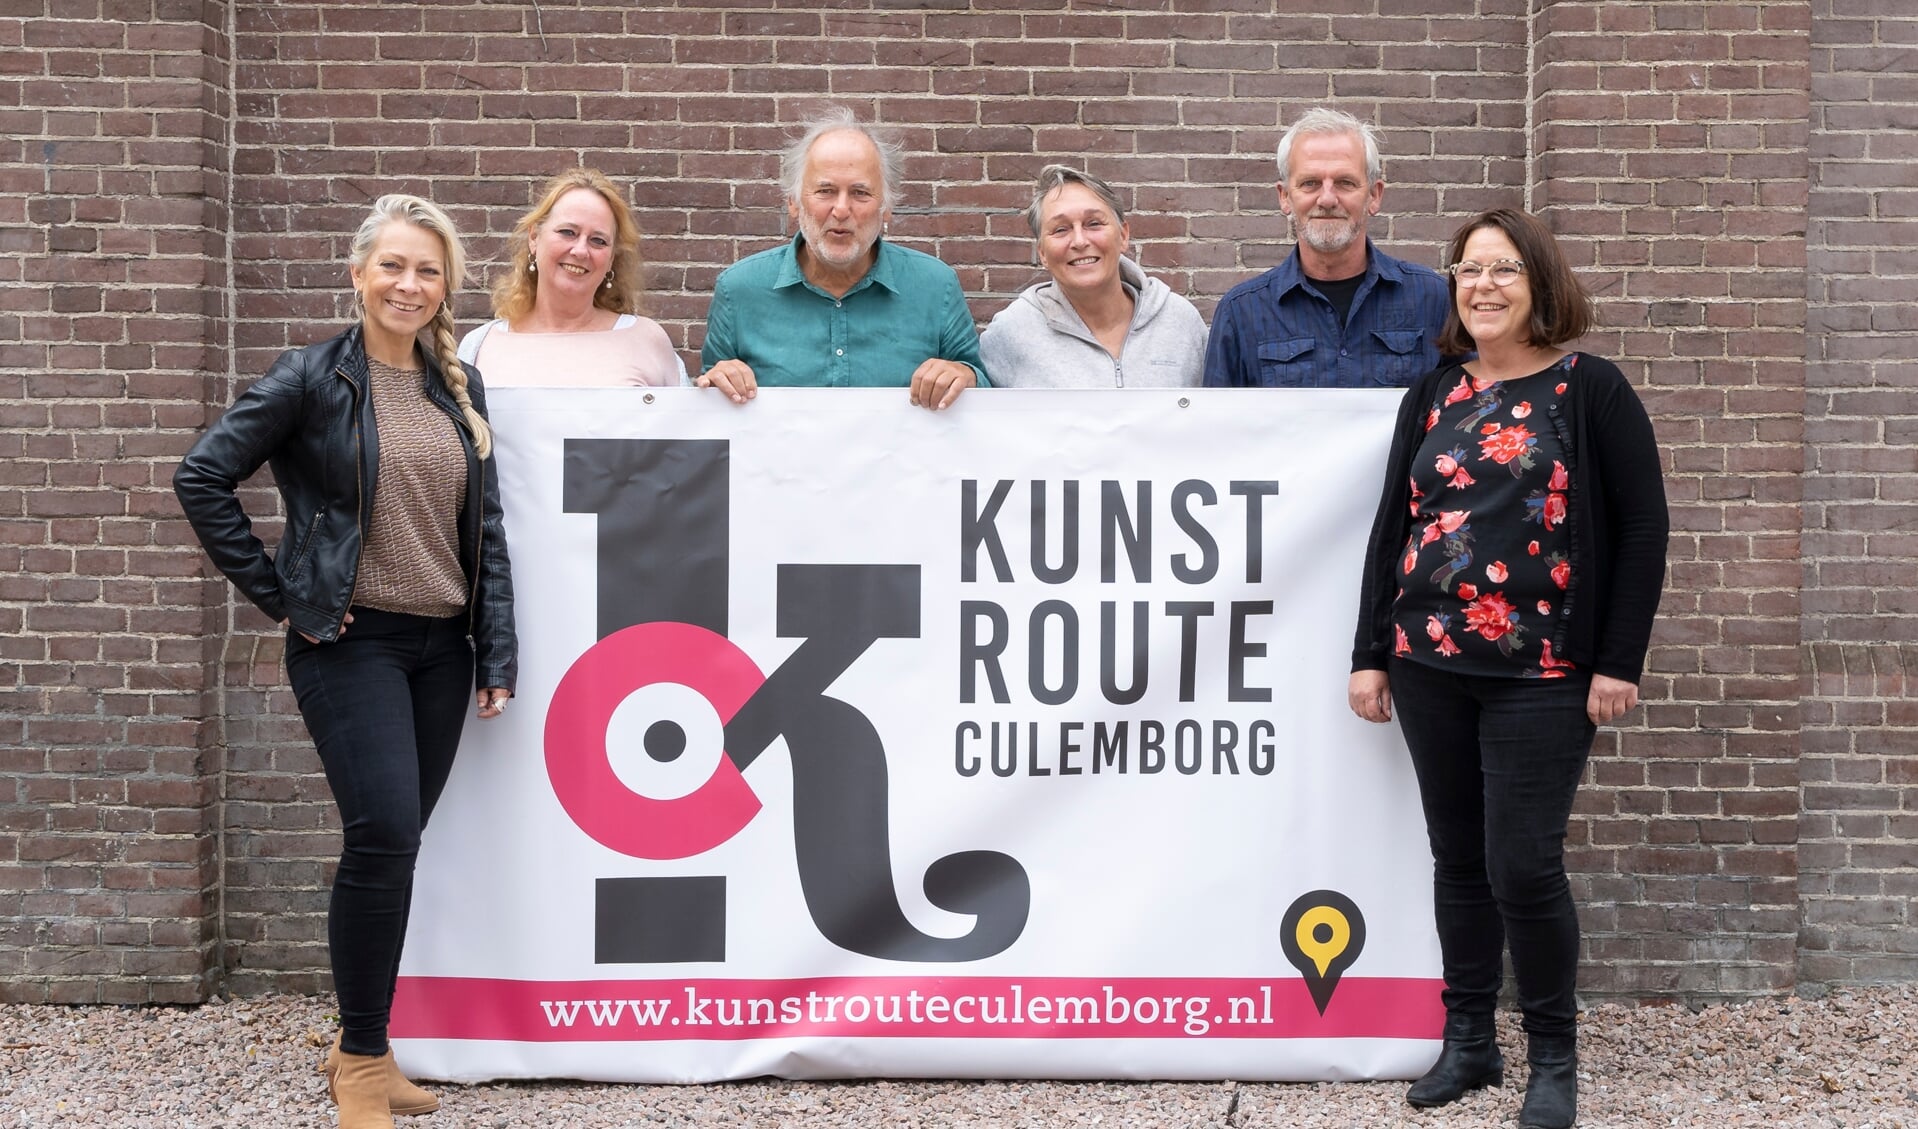 Het bestuur van Kunstroute Culemborg, met v.l.n.r. Angelique Verkaik, Roos Rispens, Henk van der Gronde (voorzitter), Ans van den Hoogen, Carol van den Hoogen en Karin de Coo.